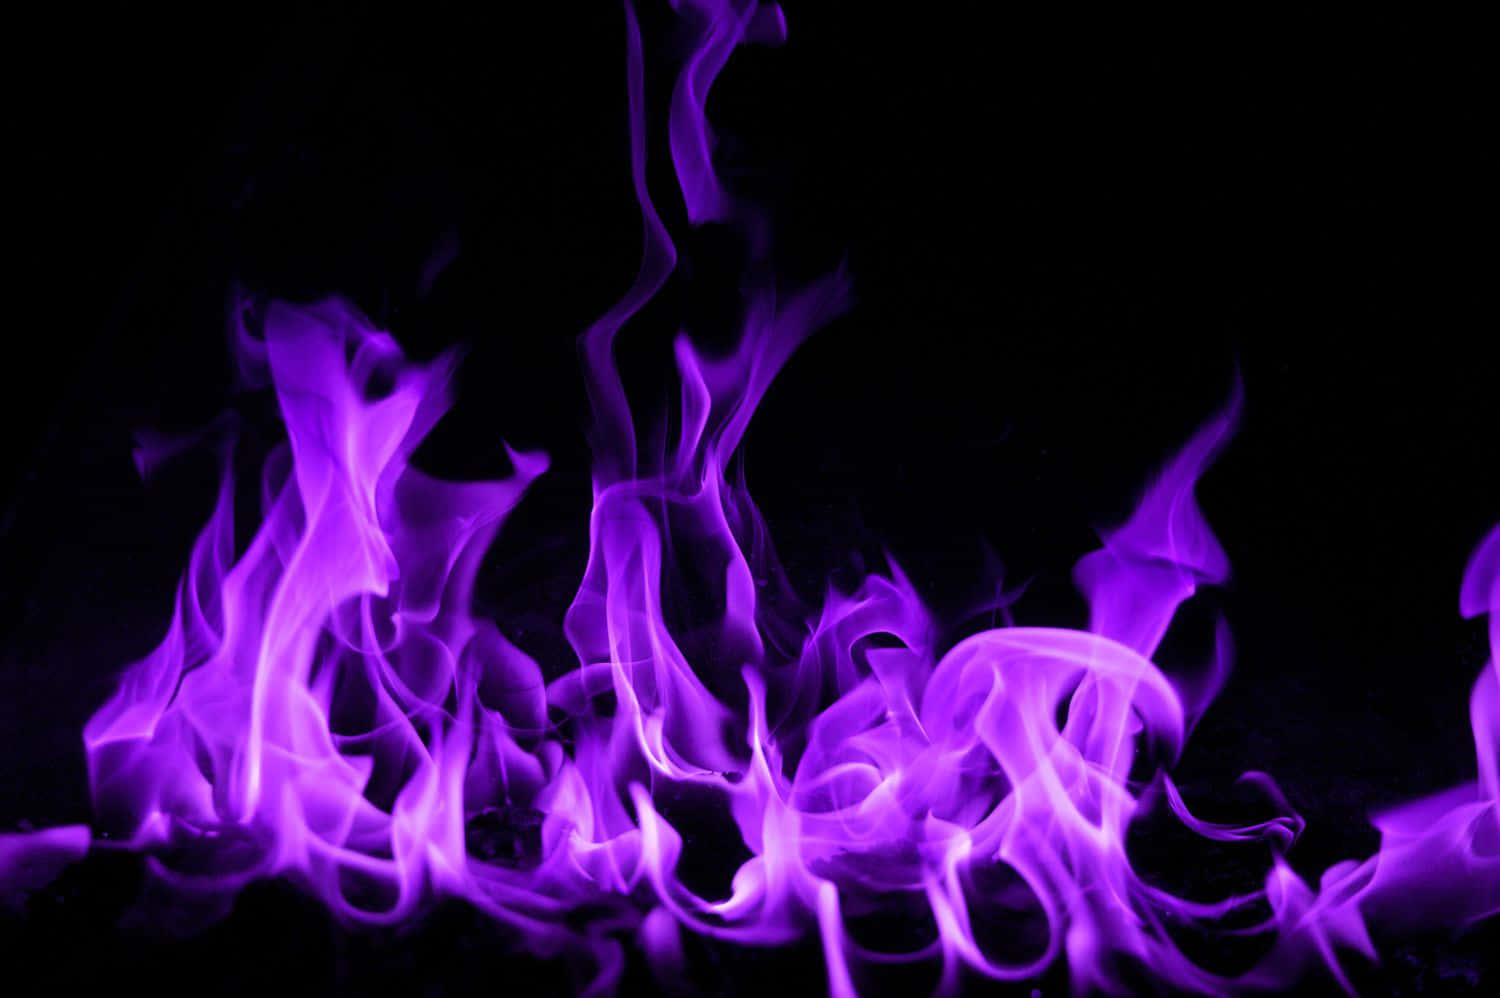 “The Intensity of Purple Fire”